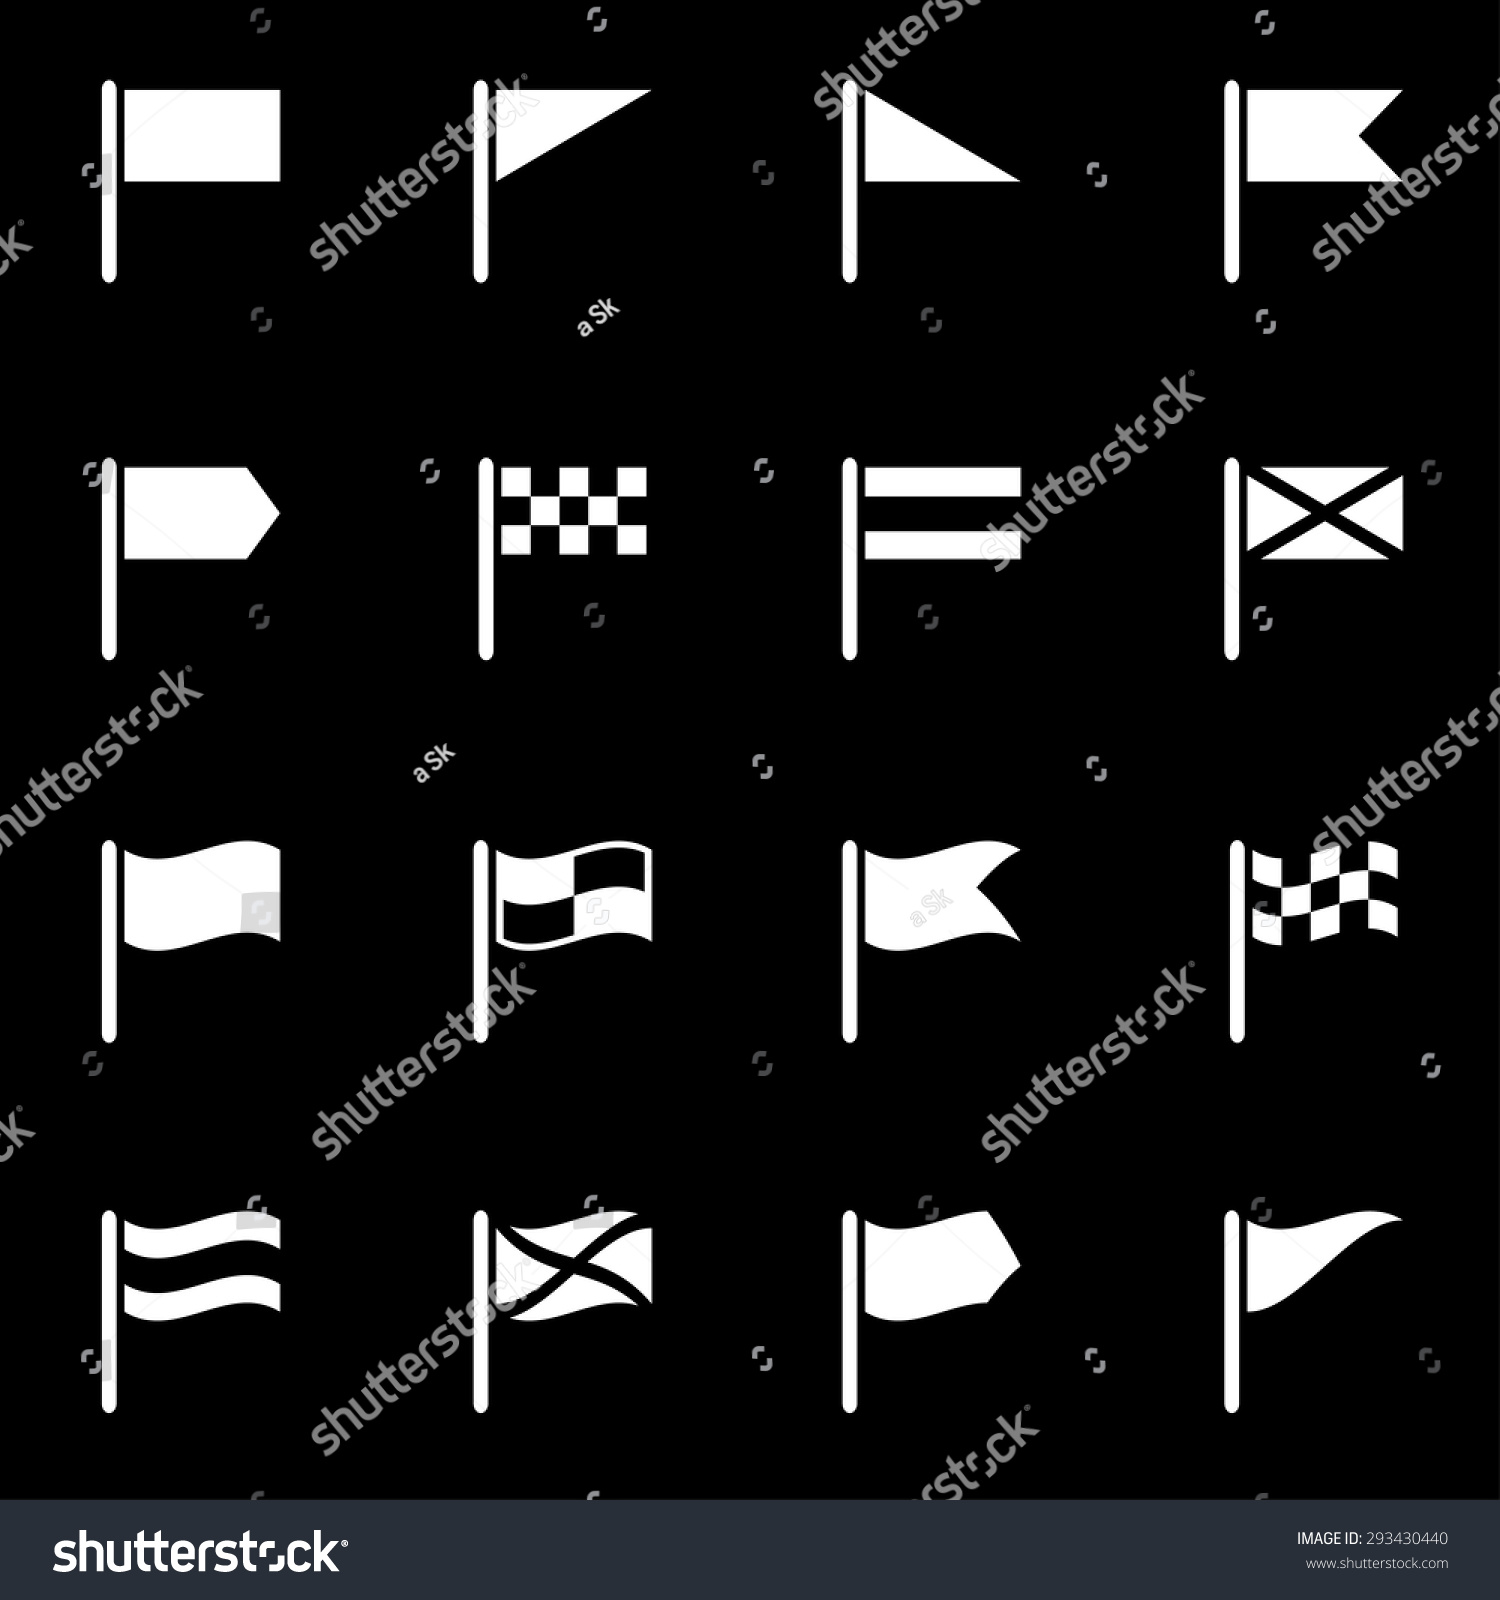 Vector White Flag Icon Set - 293430440 : Shutterstock